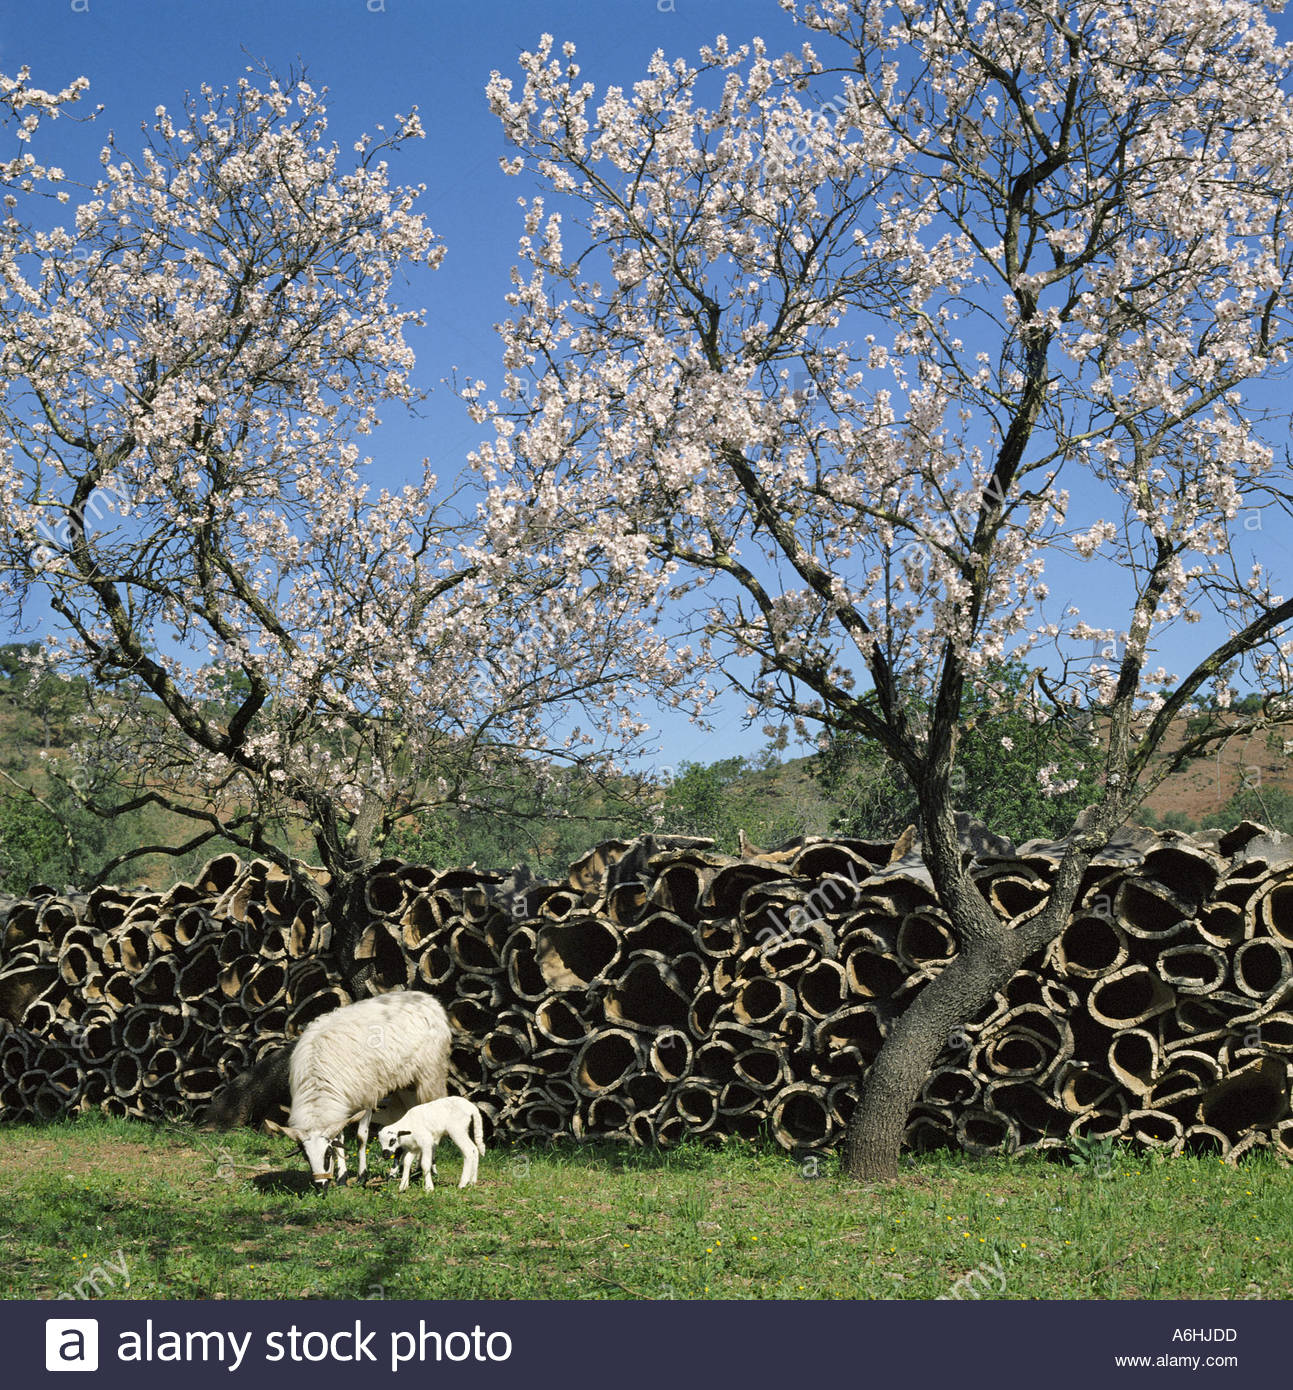 Le Portugal l'Algarve. d'amandiers en fleurs au début du printemps. avec l'écorce de liège superposés, une brebis et un agneau Banque D'Images